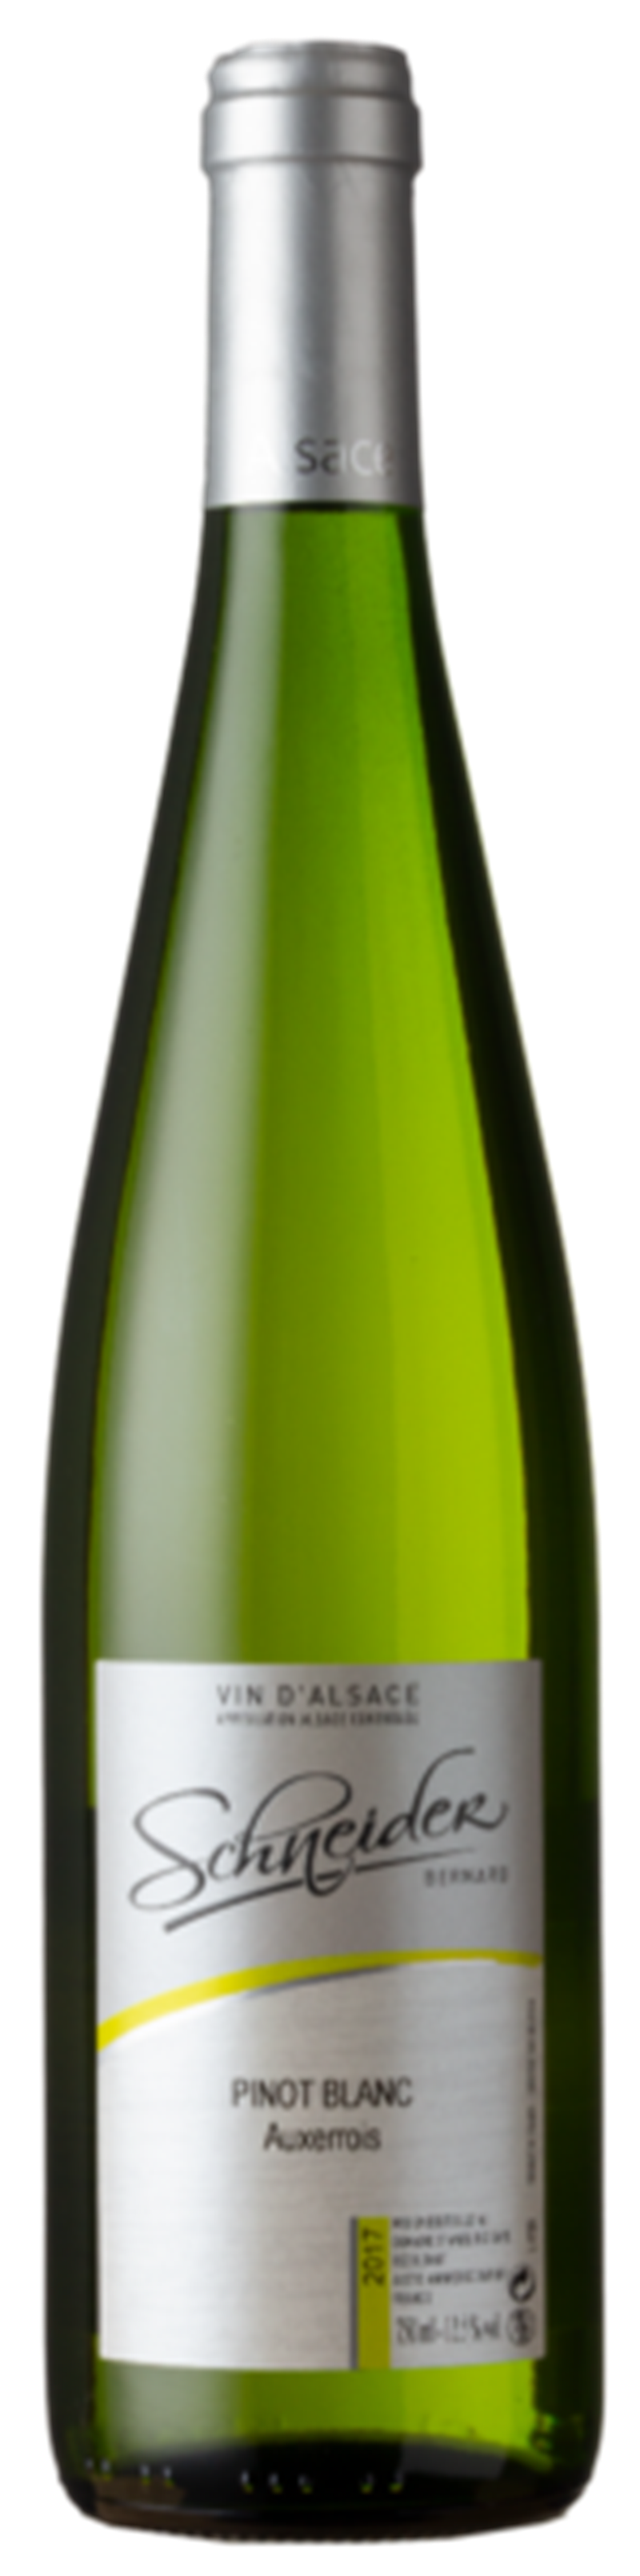 Wijnkado Bernhard Schneider Pinot Blanc